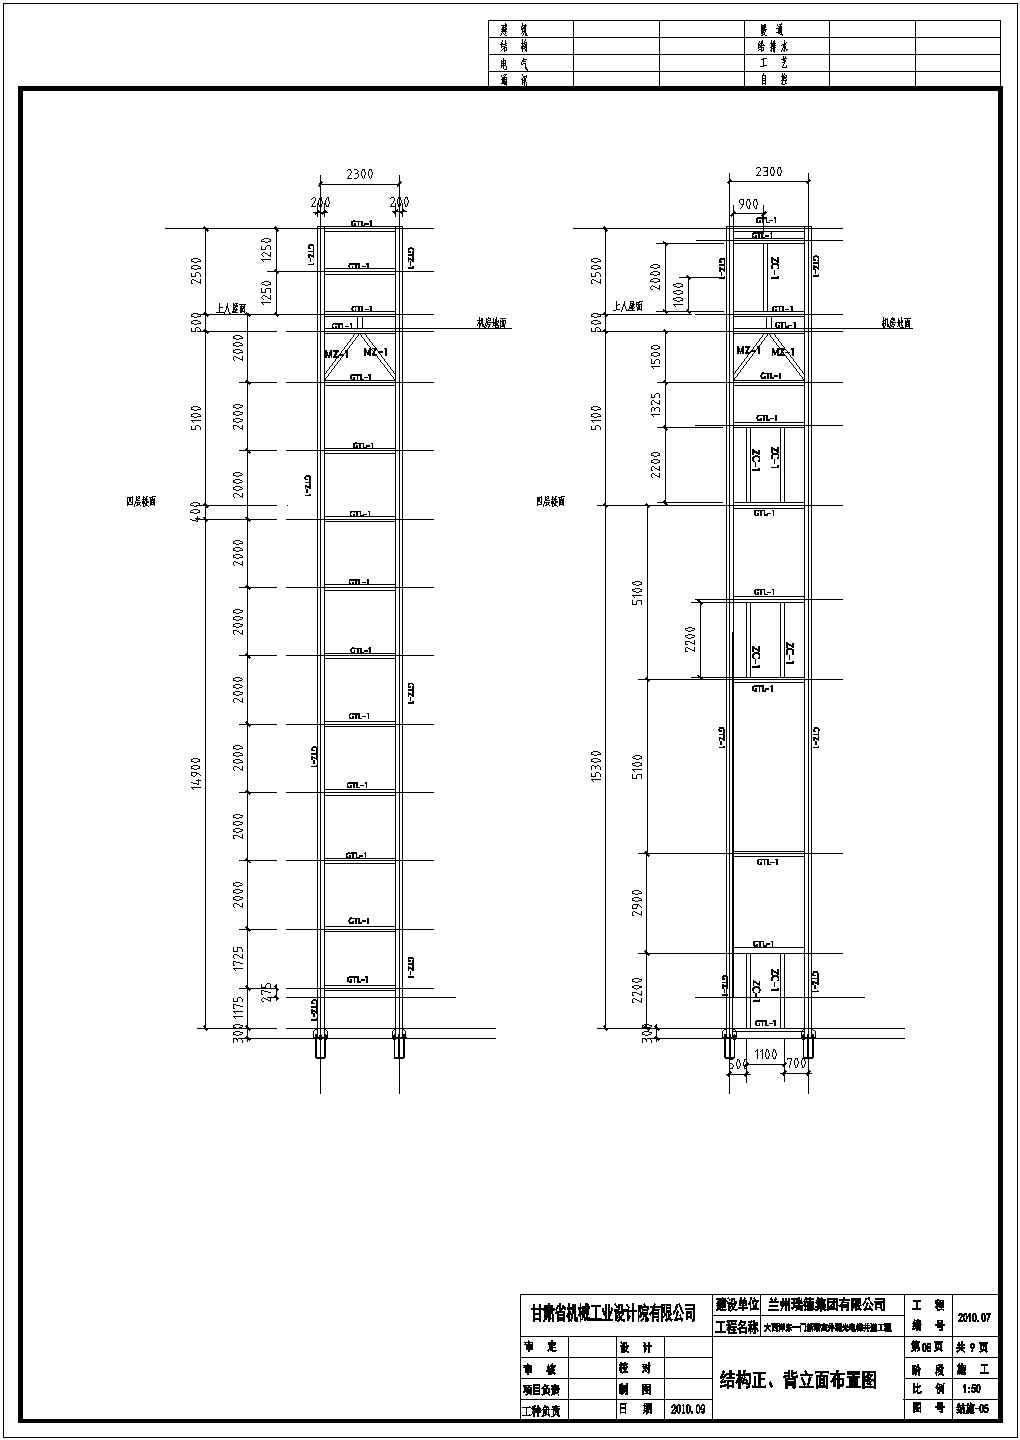 室外观光电梯钢结构井道工程竣工图